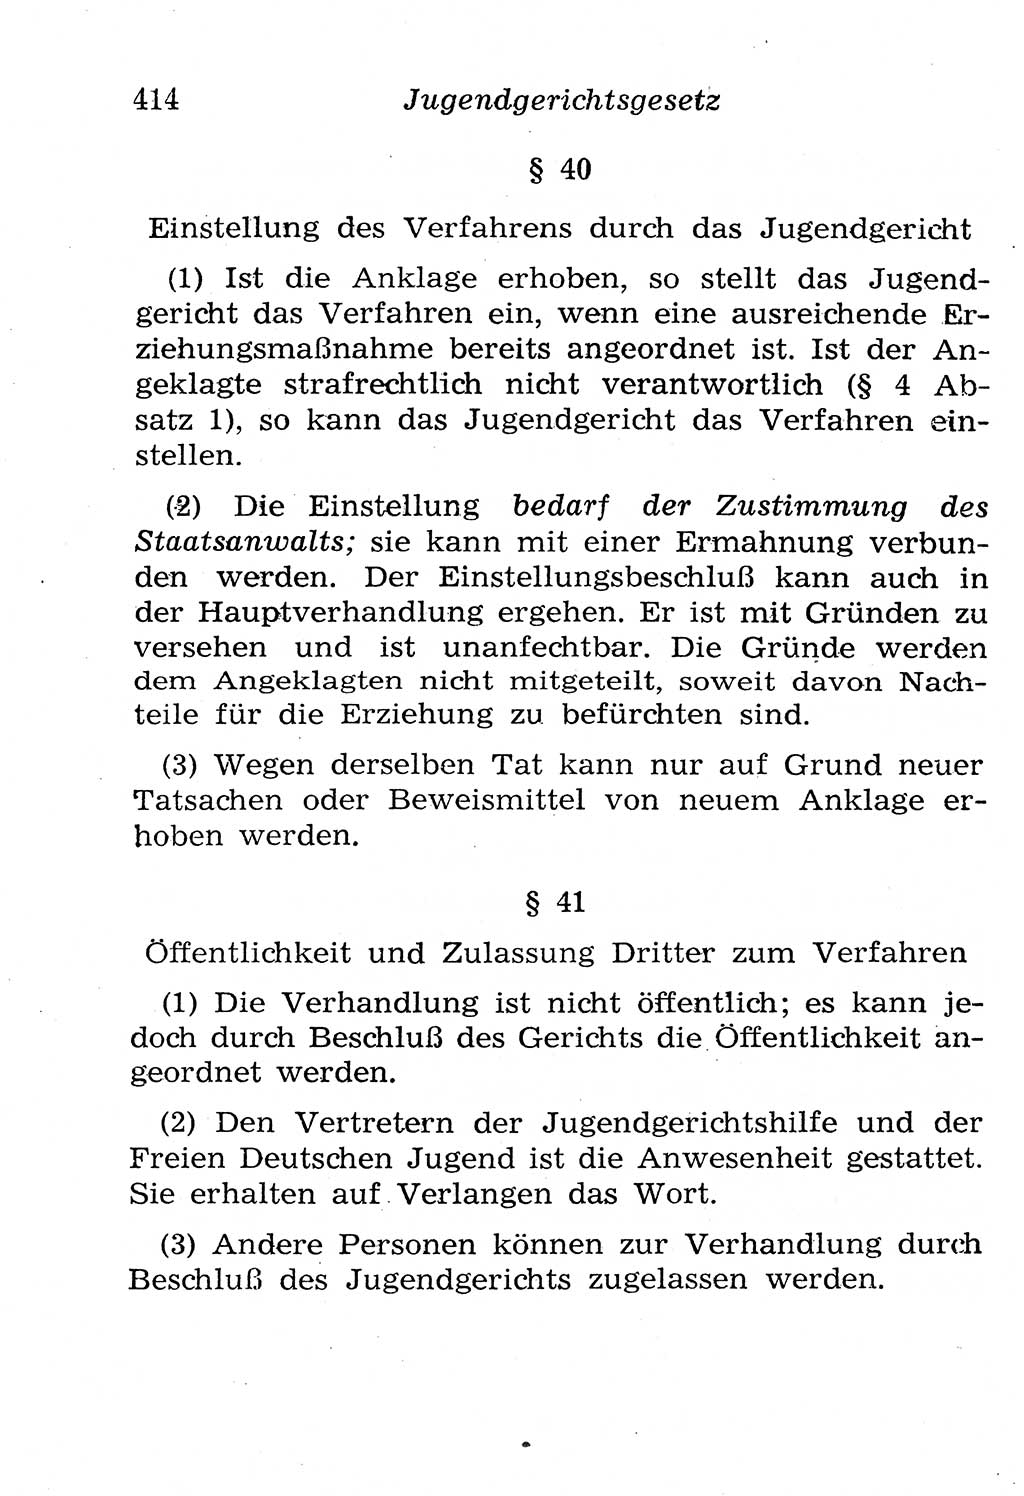 Strafgesetzbuch (StGB) und andere Strafgesetze [Deutsche Demokratische Republik (DDR)] 1958, Seite 414 (StGB Strafges. DDR 1958, S. 414)